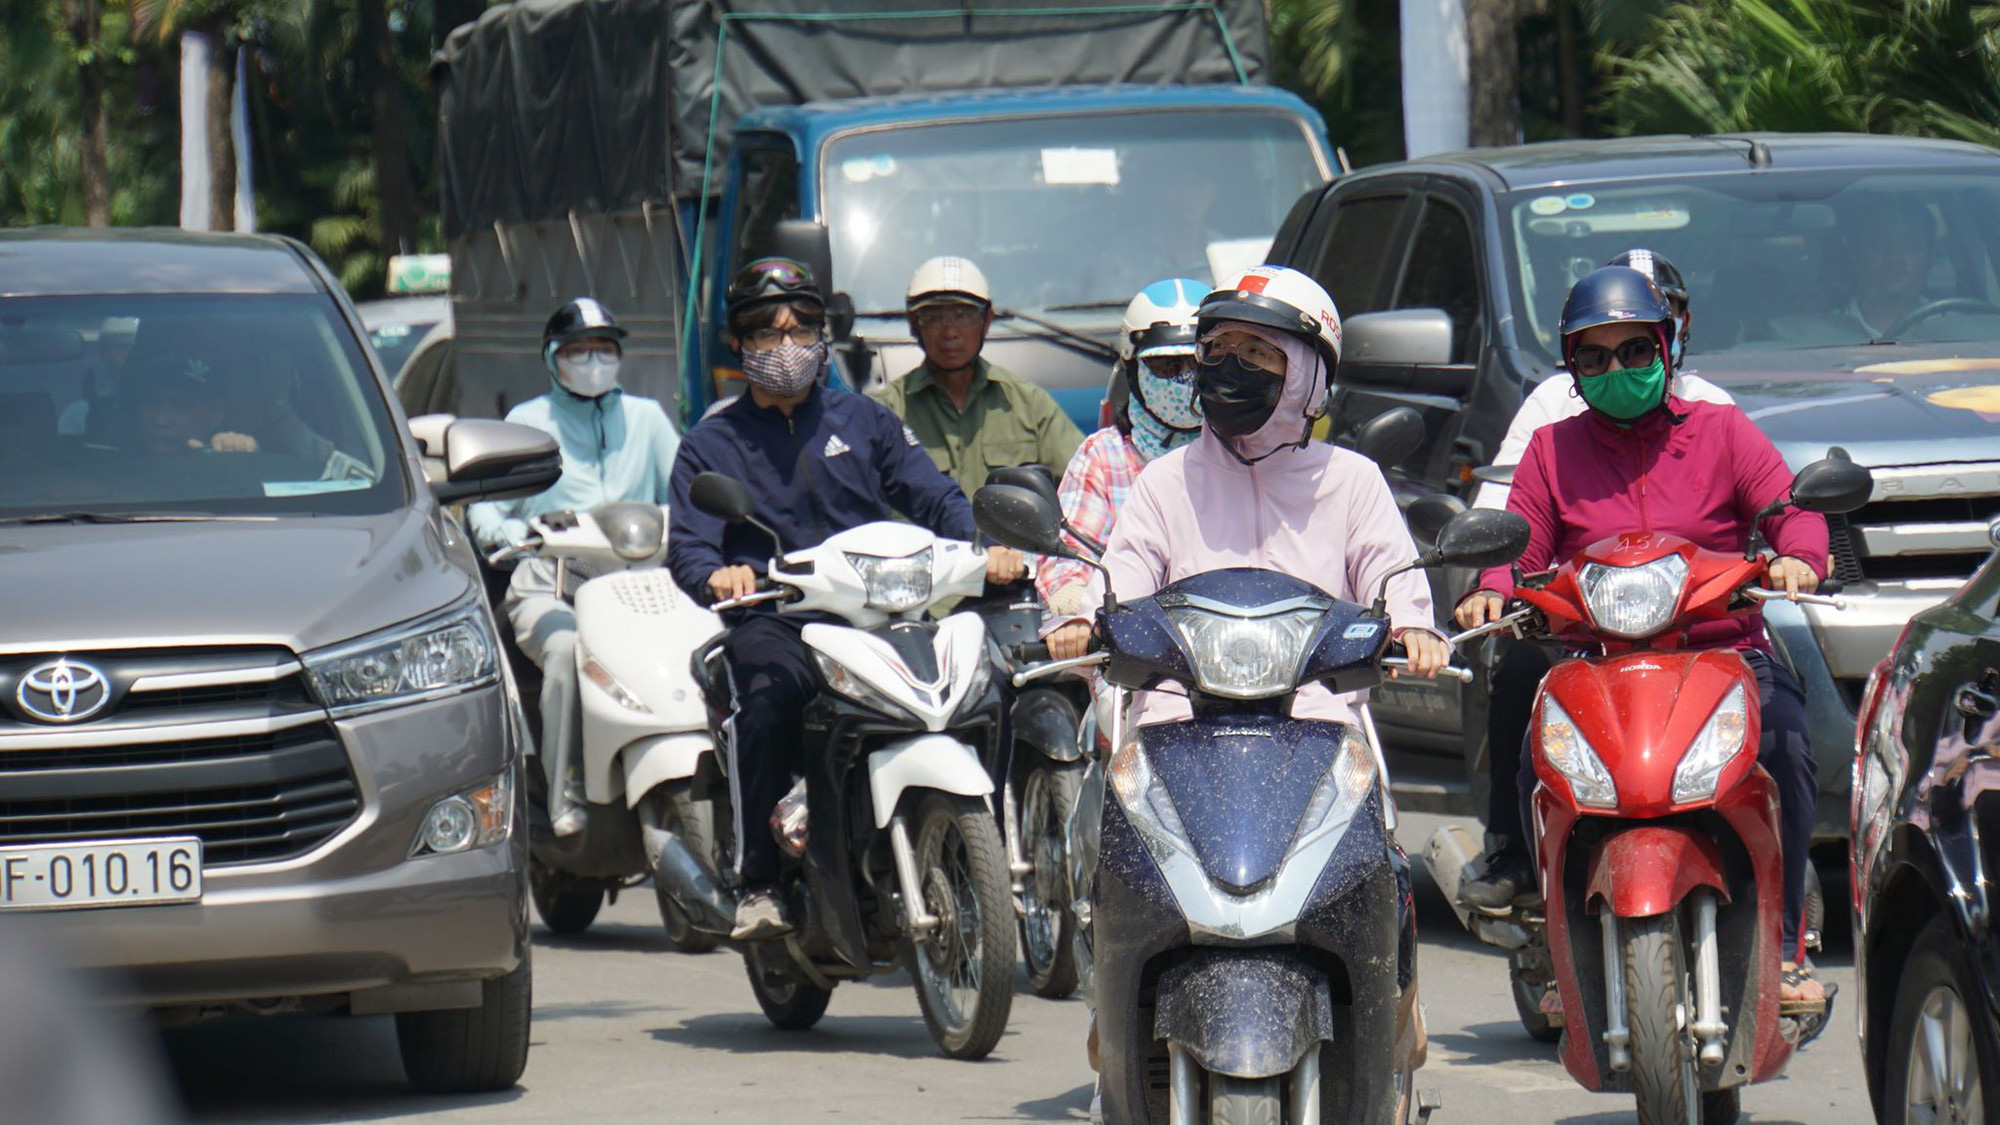 Chỉ số tia UV tại Hà Nội và Đà Nẵng từ 8-10 - mức gây hại rất cao, người dân ra đường đừng quên làm những việc này - Ảnh 1.